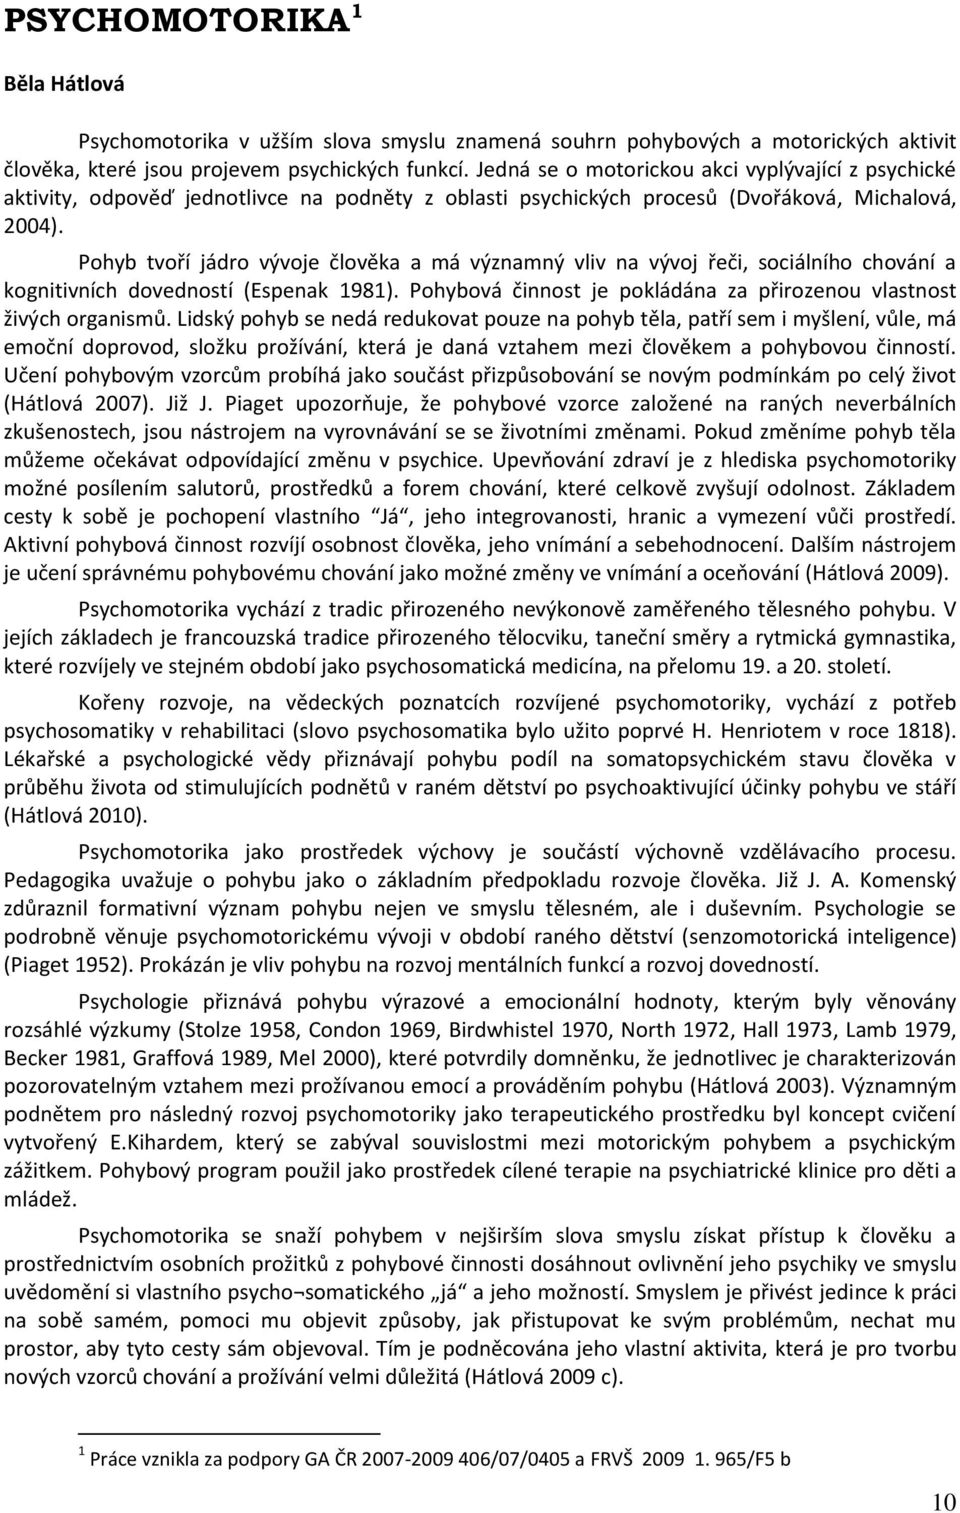 Kapitoly z teorie psychomotorické terapie. Běla Hátlová & Jiří Kirchner  (eds.) - PDF Stažení zdarma